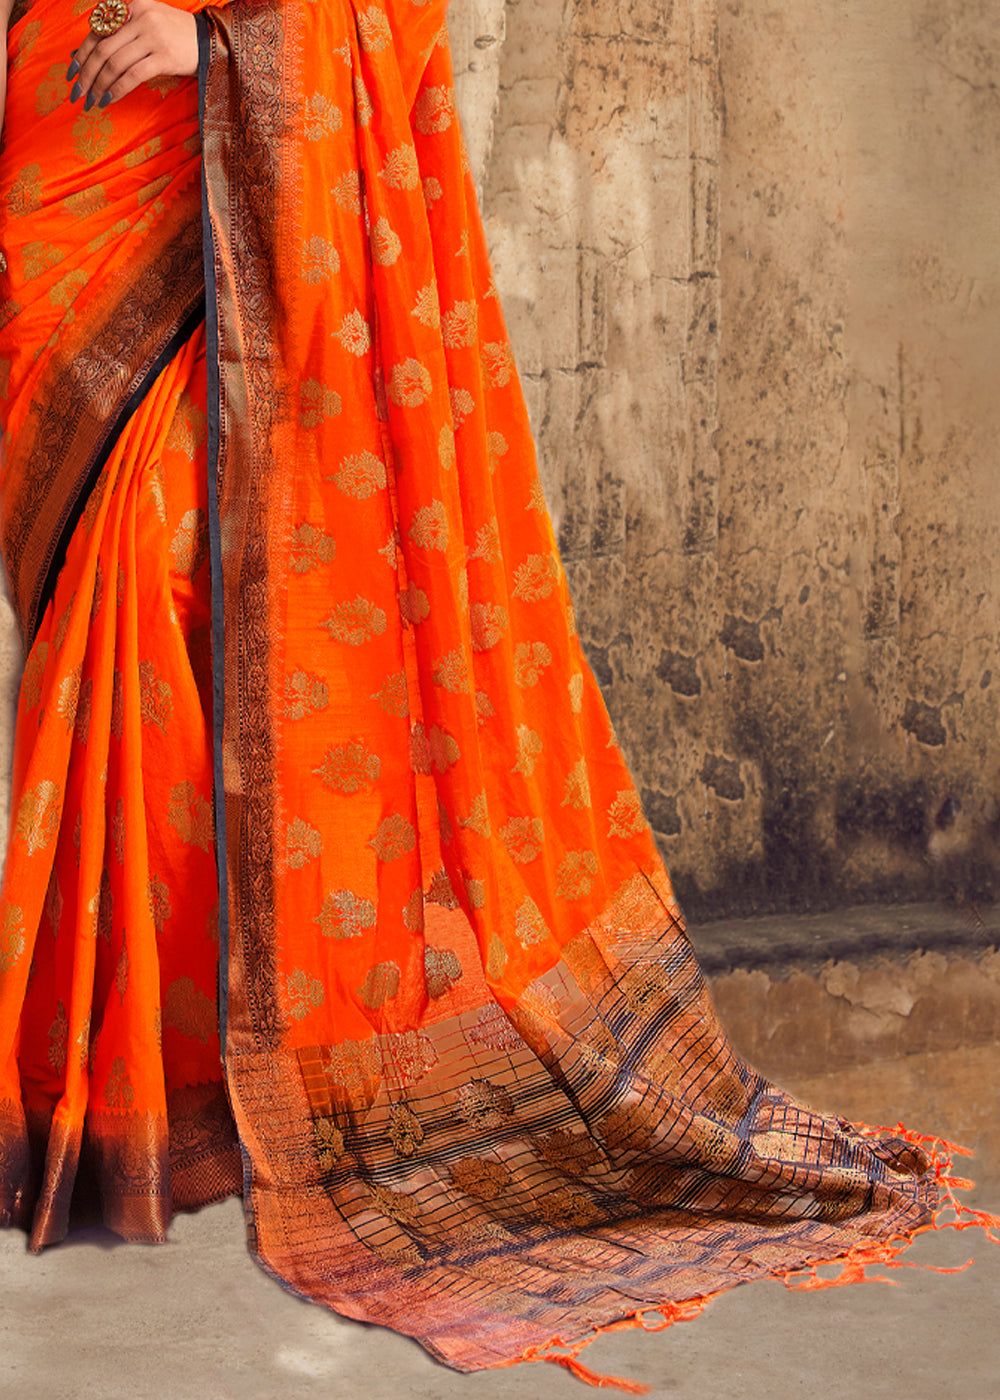 Buy MySilkLove Blaze Orange Woven Banarasi Raw Silk Saree Online